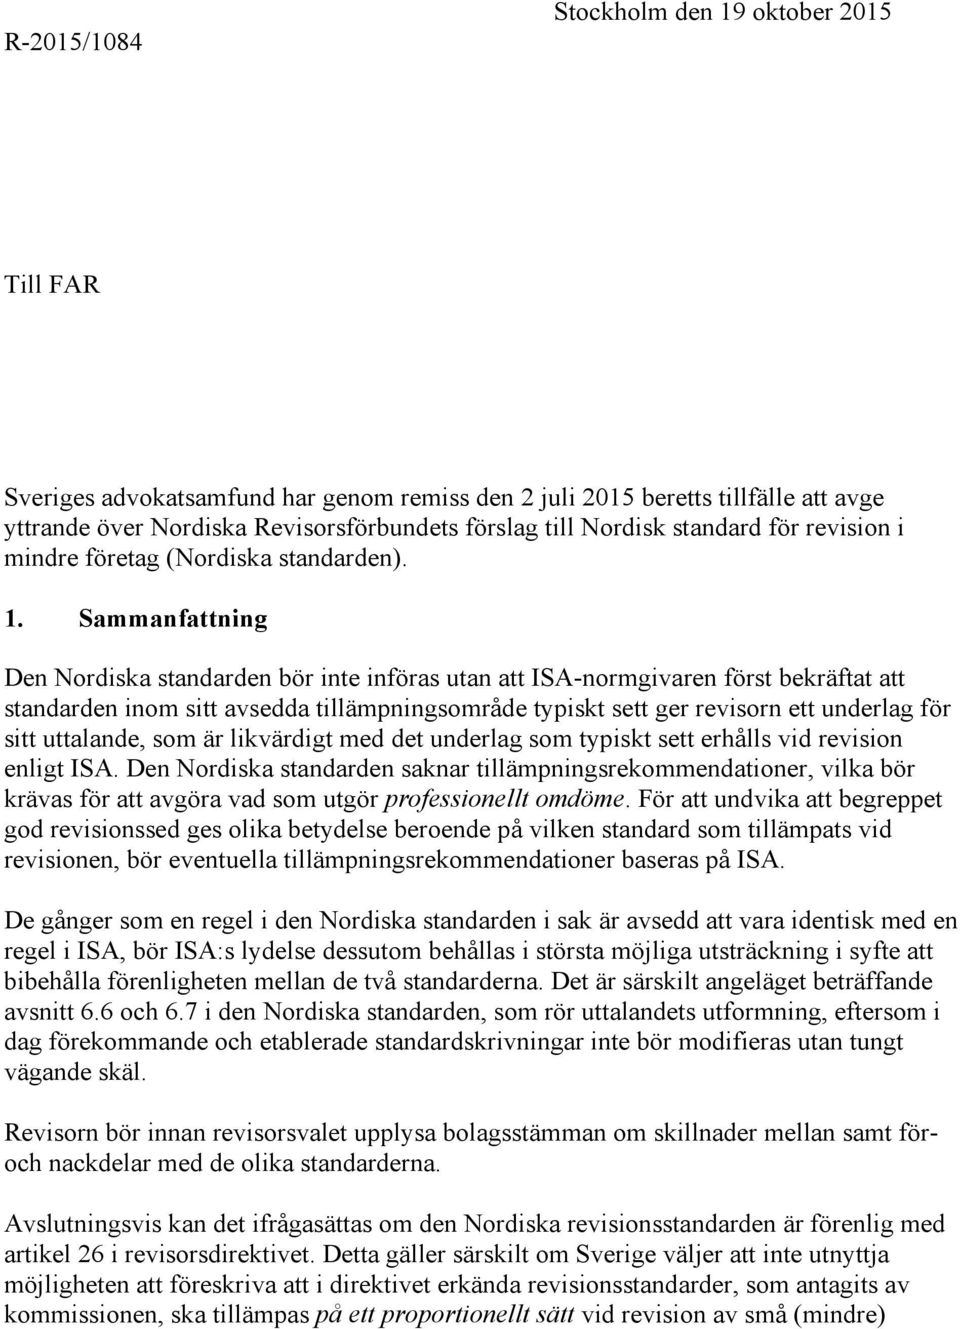 Sammanfattning Den Nordiska standarden bör inte införas utan att ISA-normgivaren först bekräftat att standarden inom sitt avsedda tillämpningsområde typiskt sett ger revisorn ett underlag för sitt